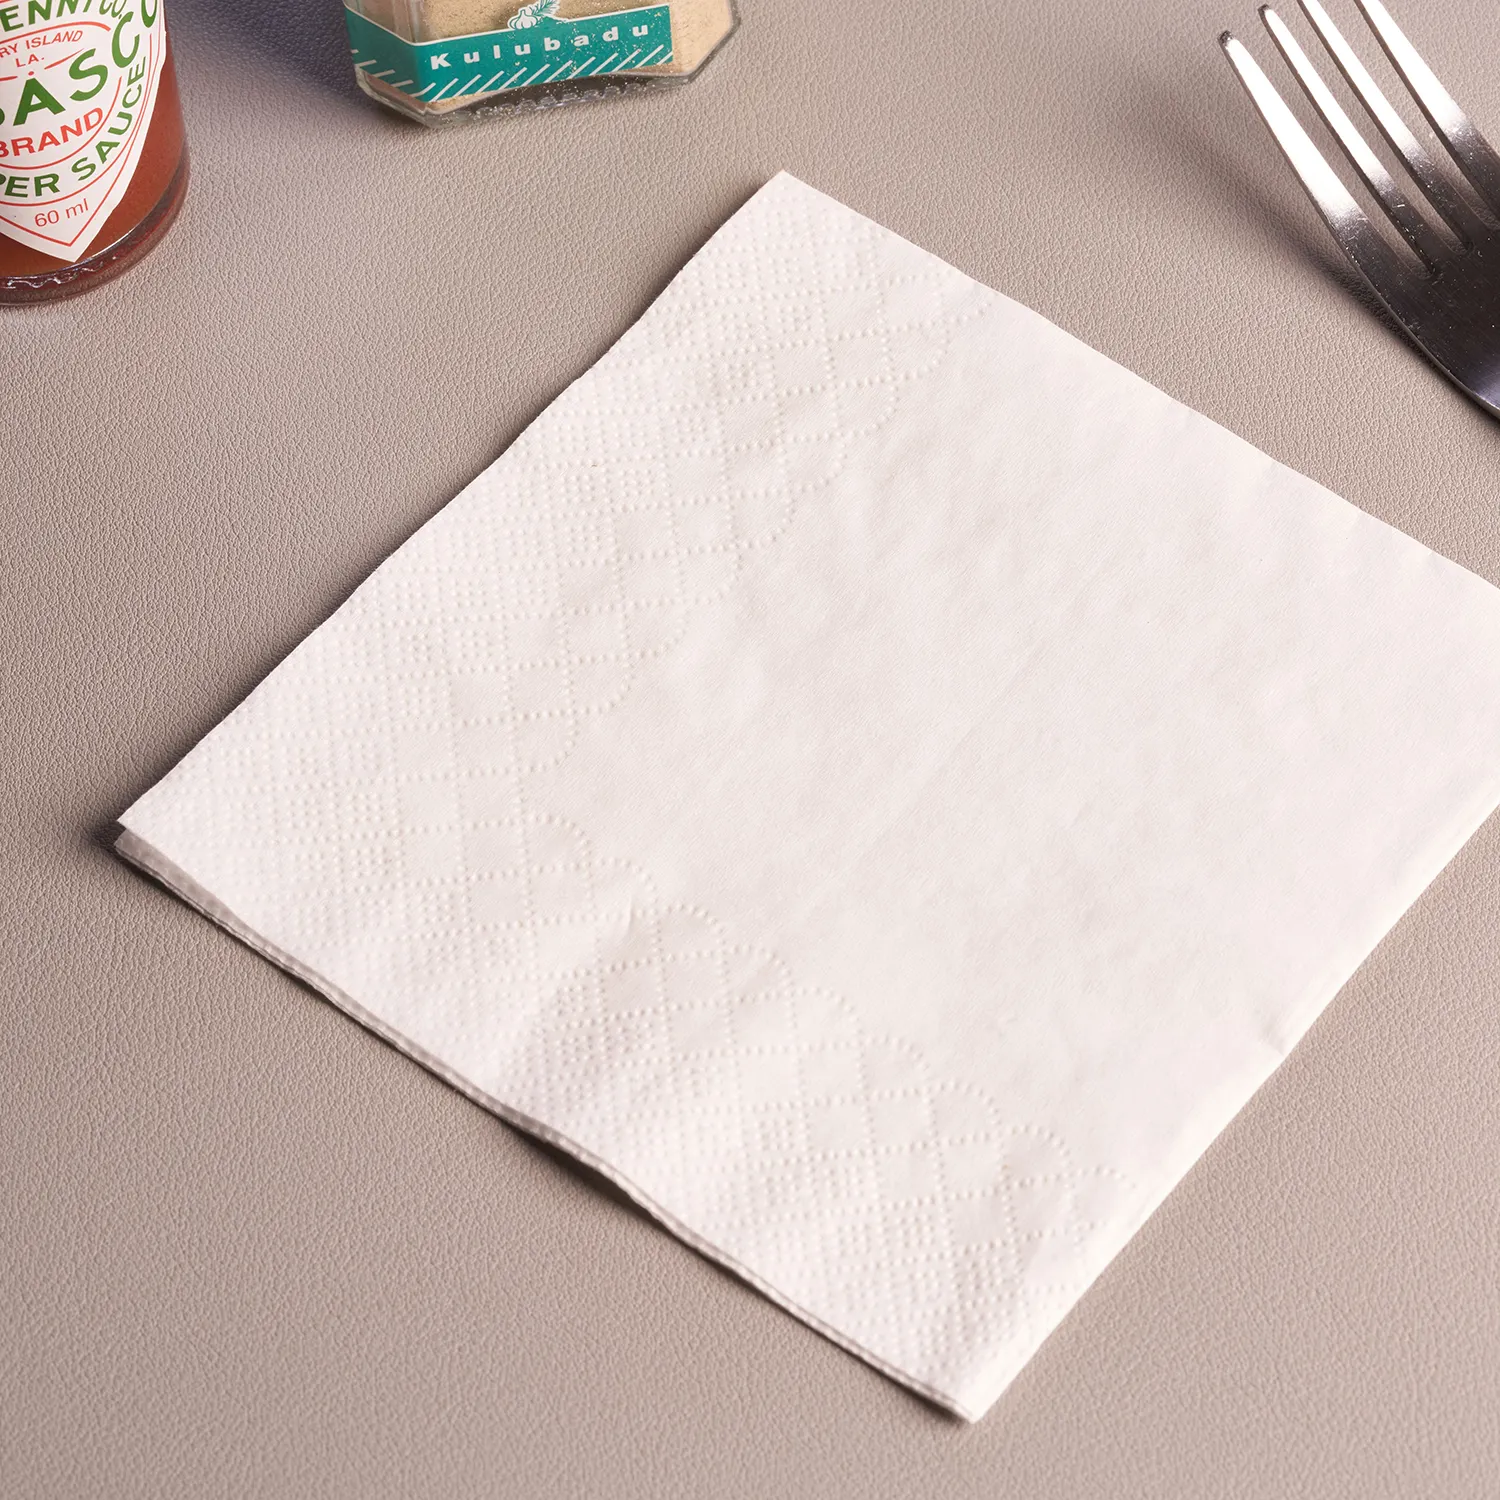 กระดาษทิชชู่เยื่อกระดาษ Customwood วัตถุดิบปลอดสารพิษตามธรรมชาติกระดาษทิชชู่คุณภาพสูงผ้าเช็ดปาก